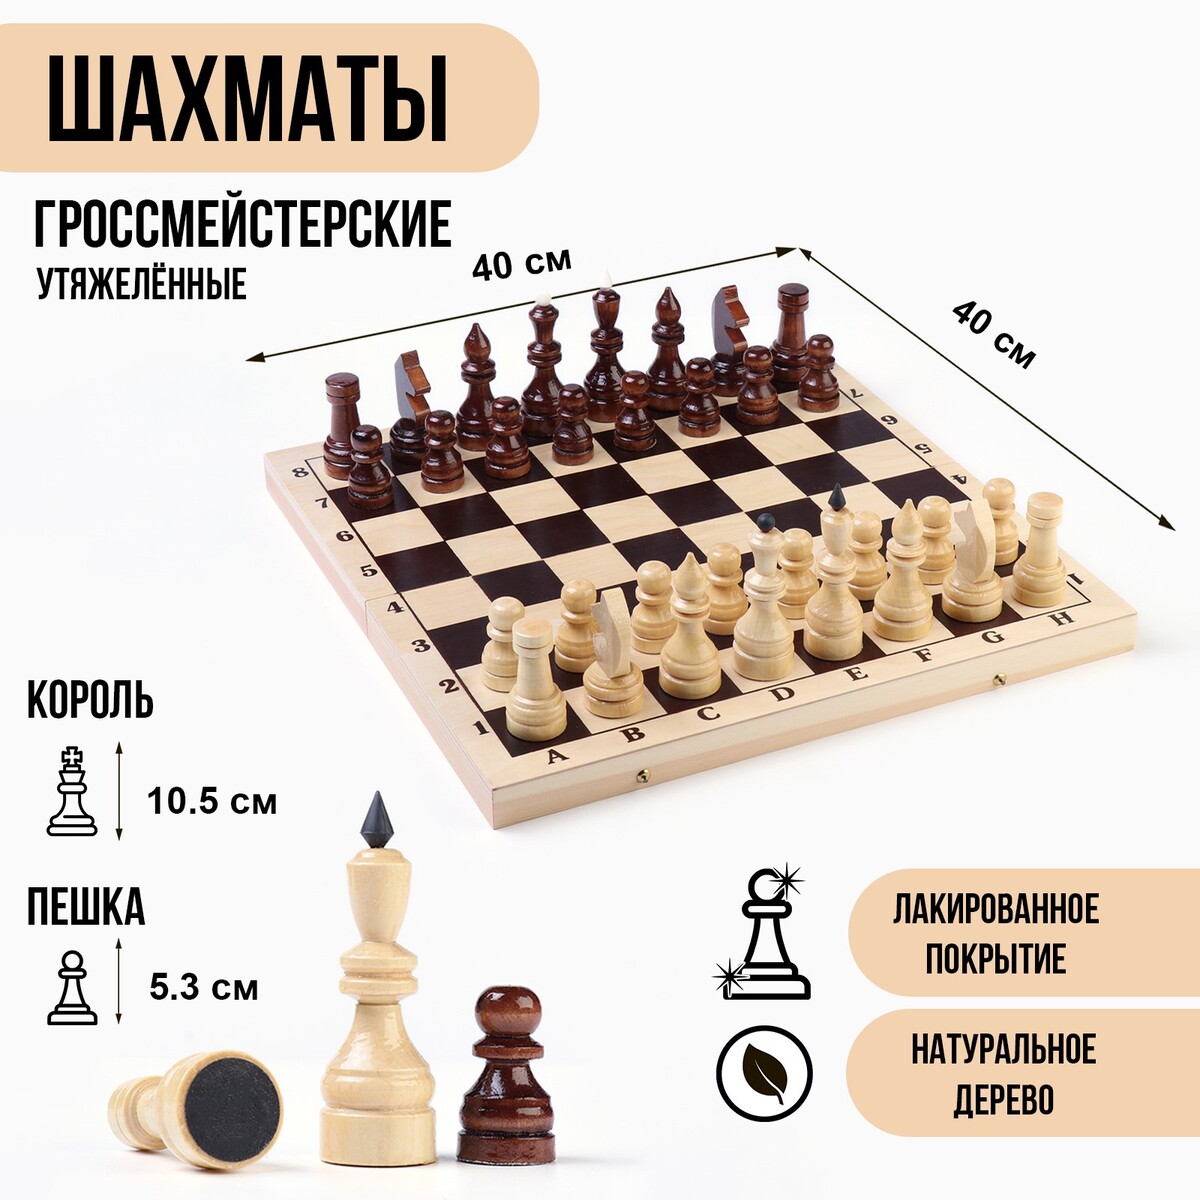 Шахматы гроссмейстерские, турнирные, утяжеленные, 40х40 см, король h=10.5 см, пешка 5.3 см железный король